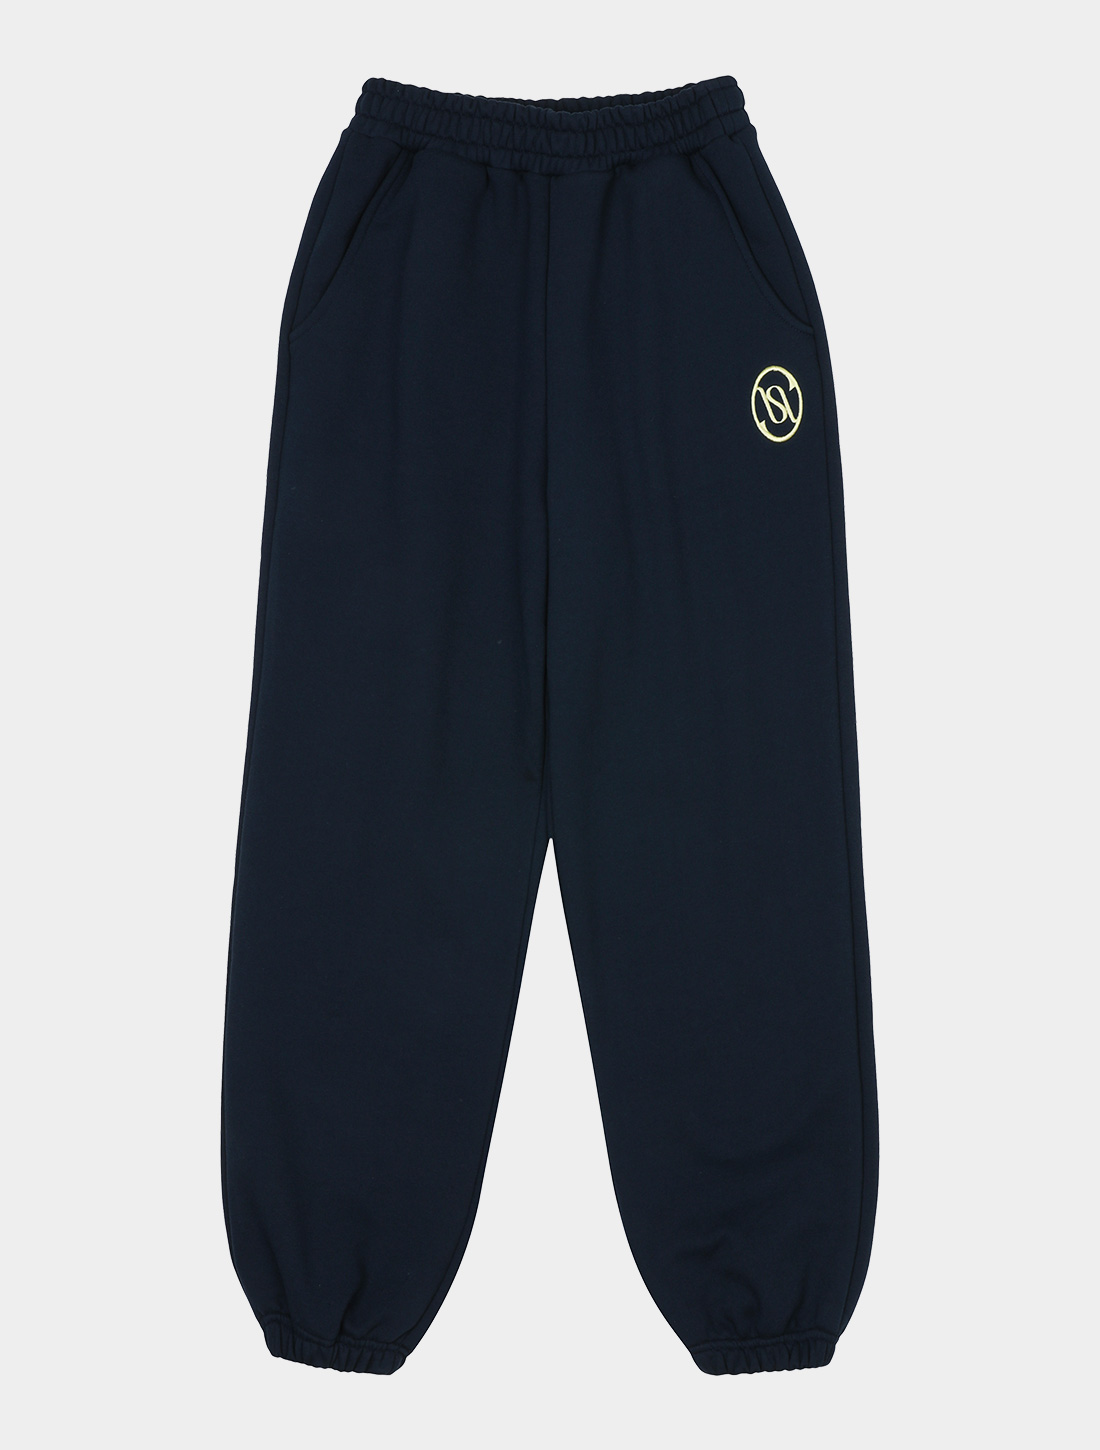 KISY logo jogger pants (navy)